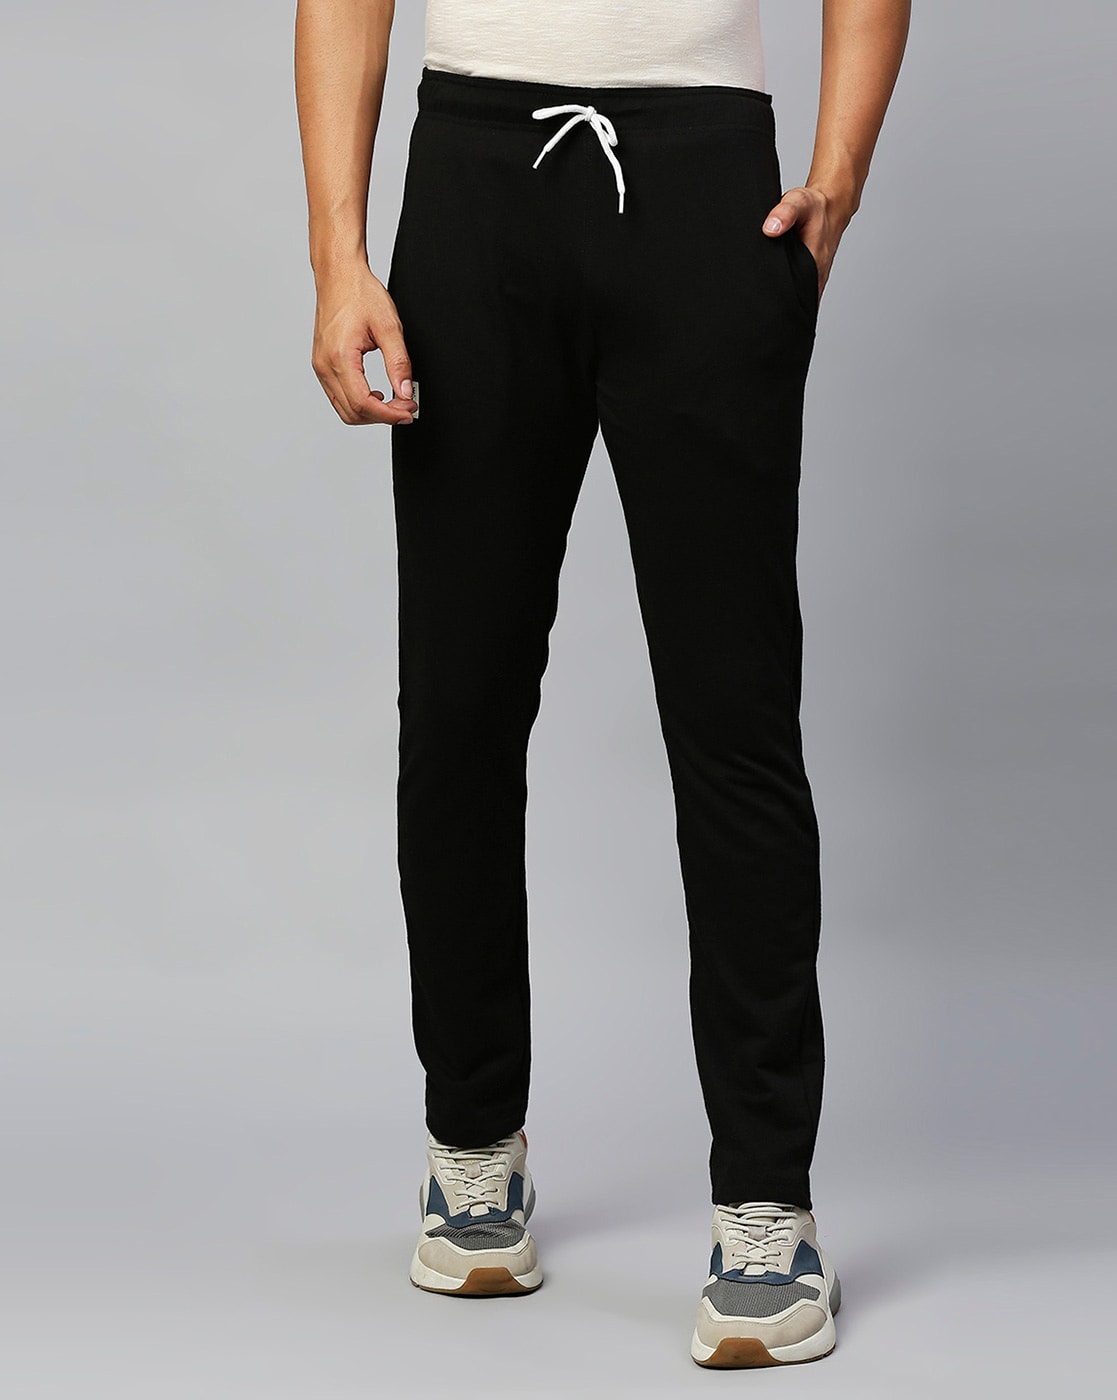 HIGHLANDER Men Green Solid Slim-Fit Track Pants – Wholesale Price App